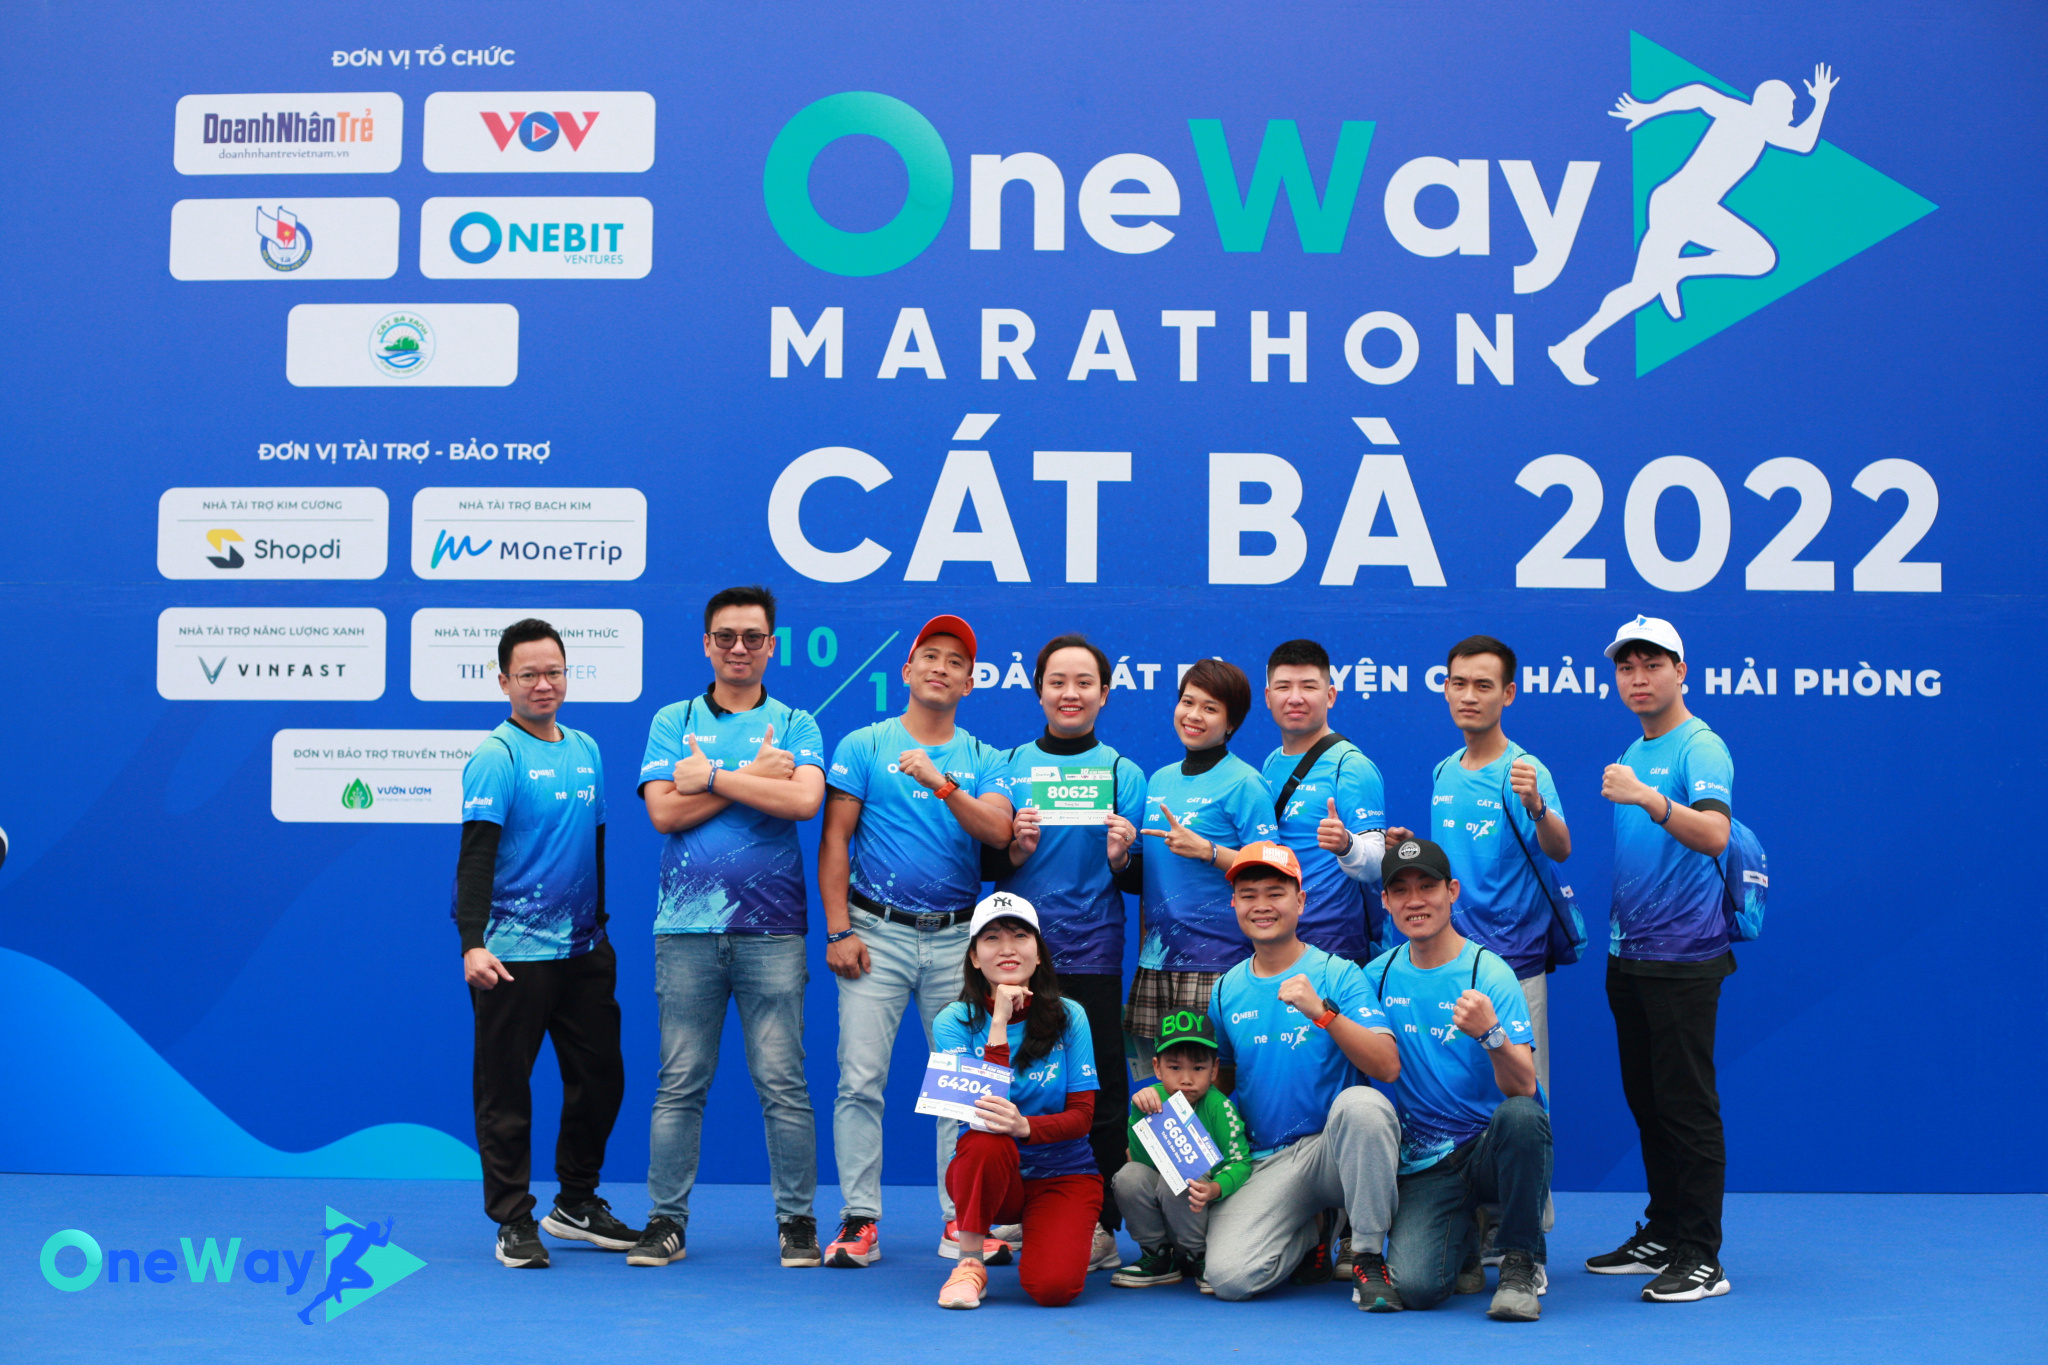 HLie - Tham gia giải chạy Oneway Marathon Cát Bà 